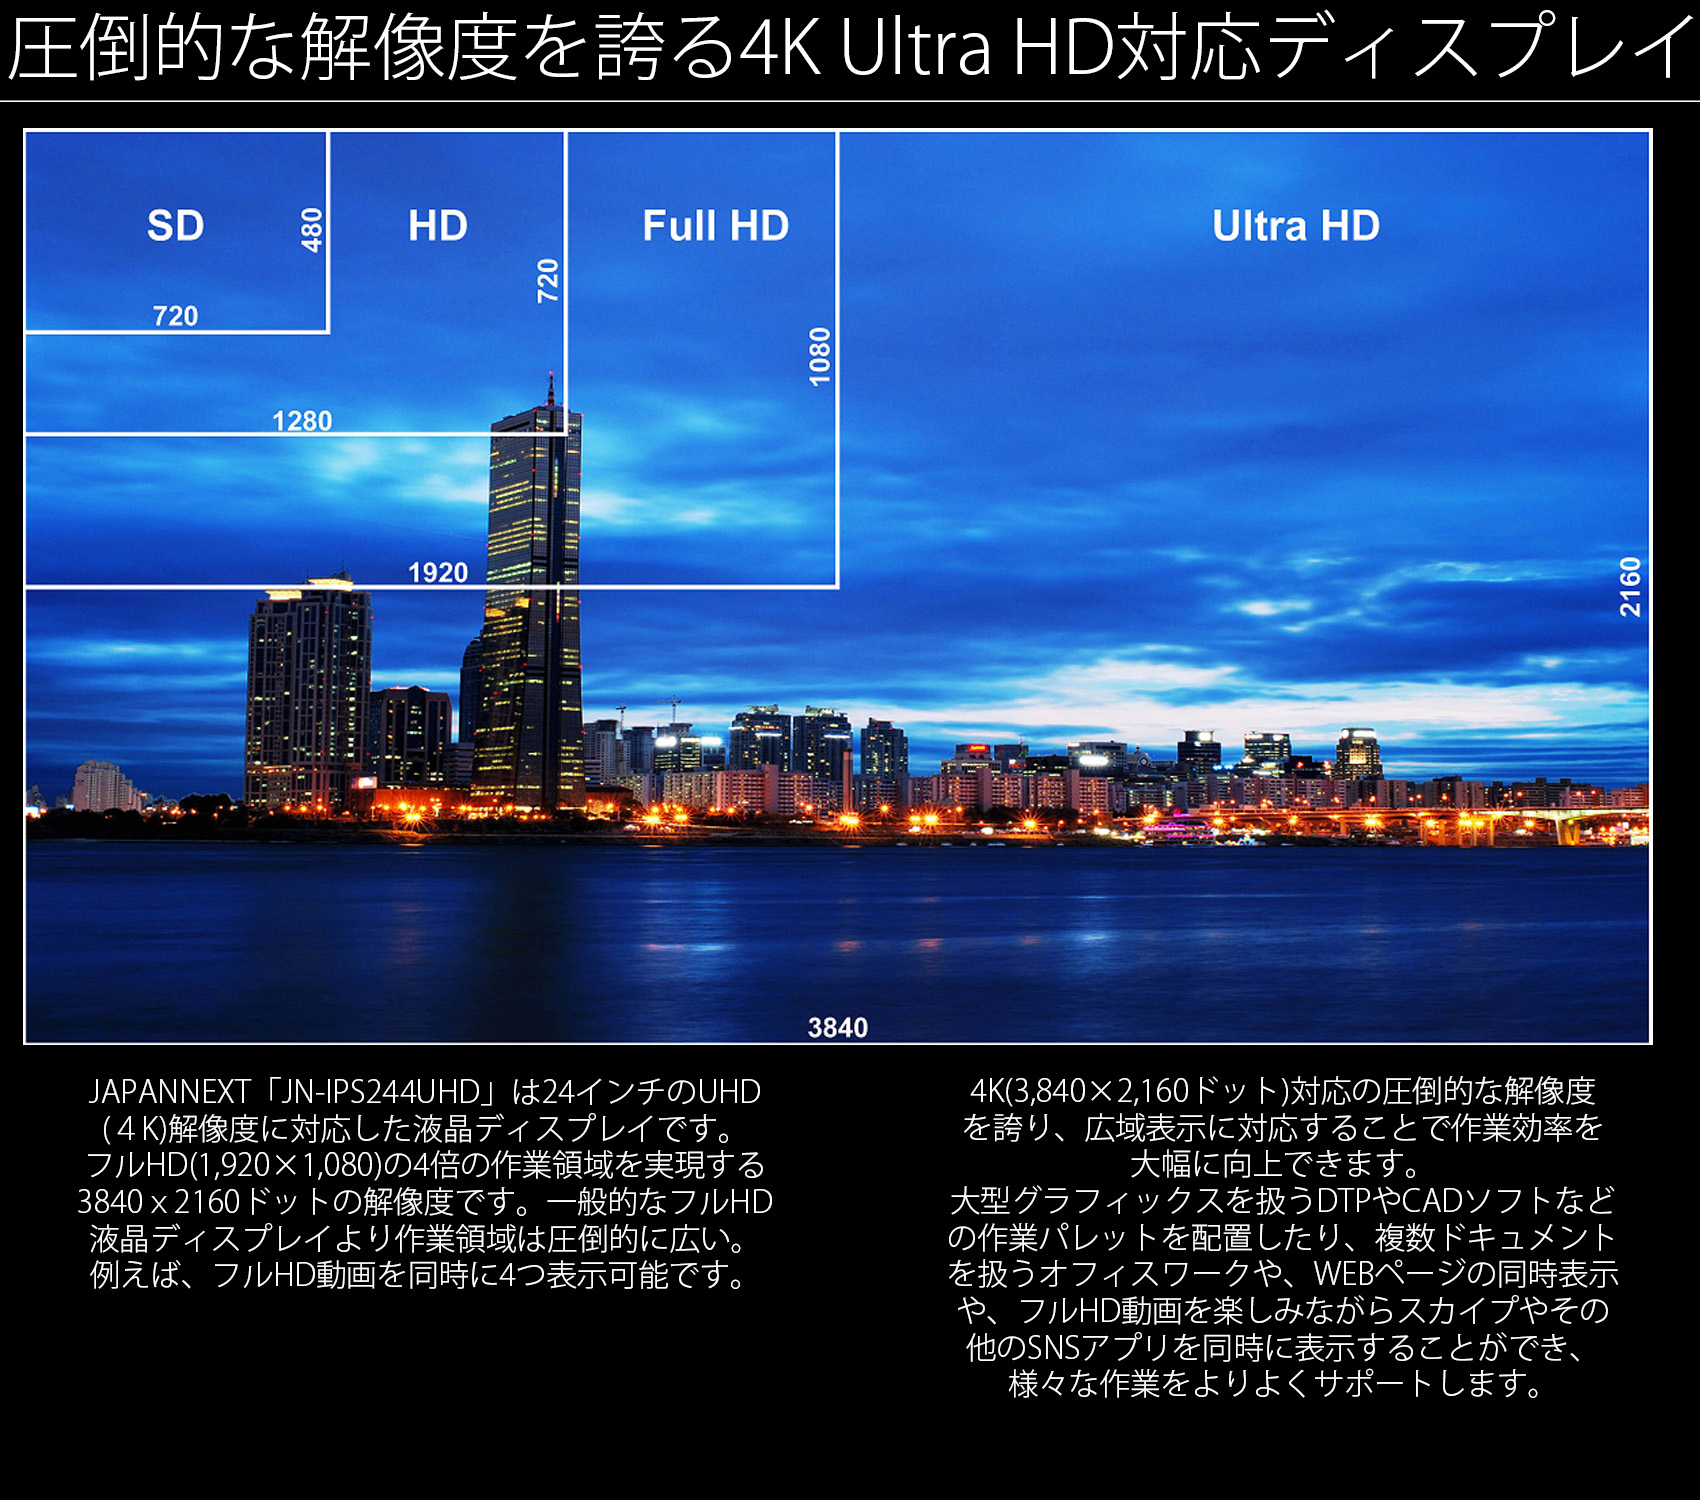 (4K)解像度に対応した液晶ディスプレイです。 フルHD(1,920×1,080)の4倍の作業領域を実現する 3840x2160ドットの解像度です。一般的なフルHD 液晶ディスプレイより作業領域は圧倒的に広い。 例えば、フルHD動画を同時に4つ表示可能です。 4K(3,840×2,160ドット)対応の圧倒的な解像度 を誇り、広域表示に対応することで作業効率を 大幅に向上できます。 大型グラフィックスを扱うDTPやCADソフトなど の作業パレットを配置したり、複数ドキュメント を扱うオフィスワークや、WEBページの同時表示 や、フルHD動画を楽しみながらスカイプやその 他のSNSアプリを同時に表示することができ、 様々な作業をよりよくサポートします。